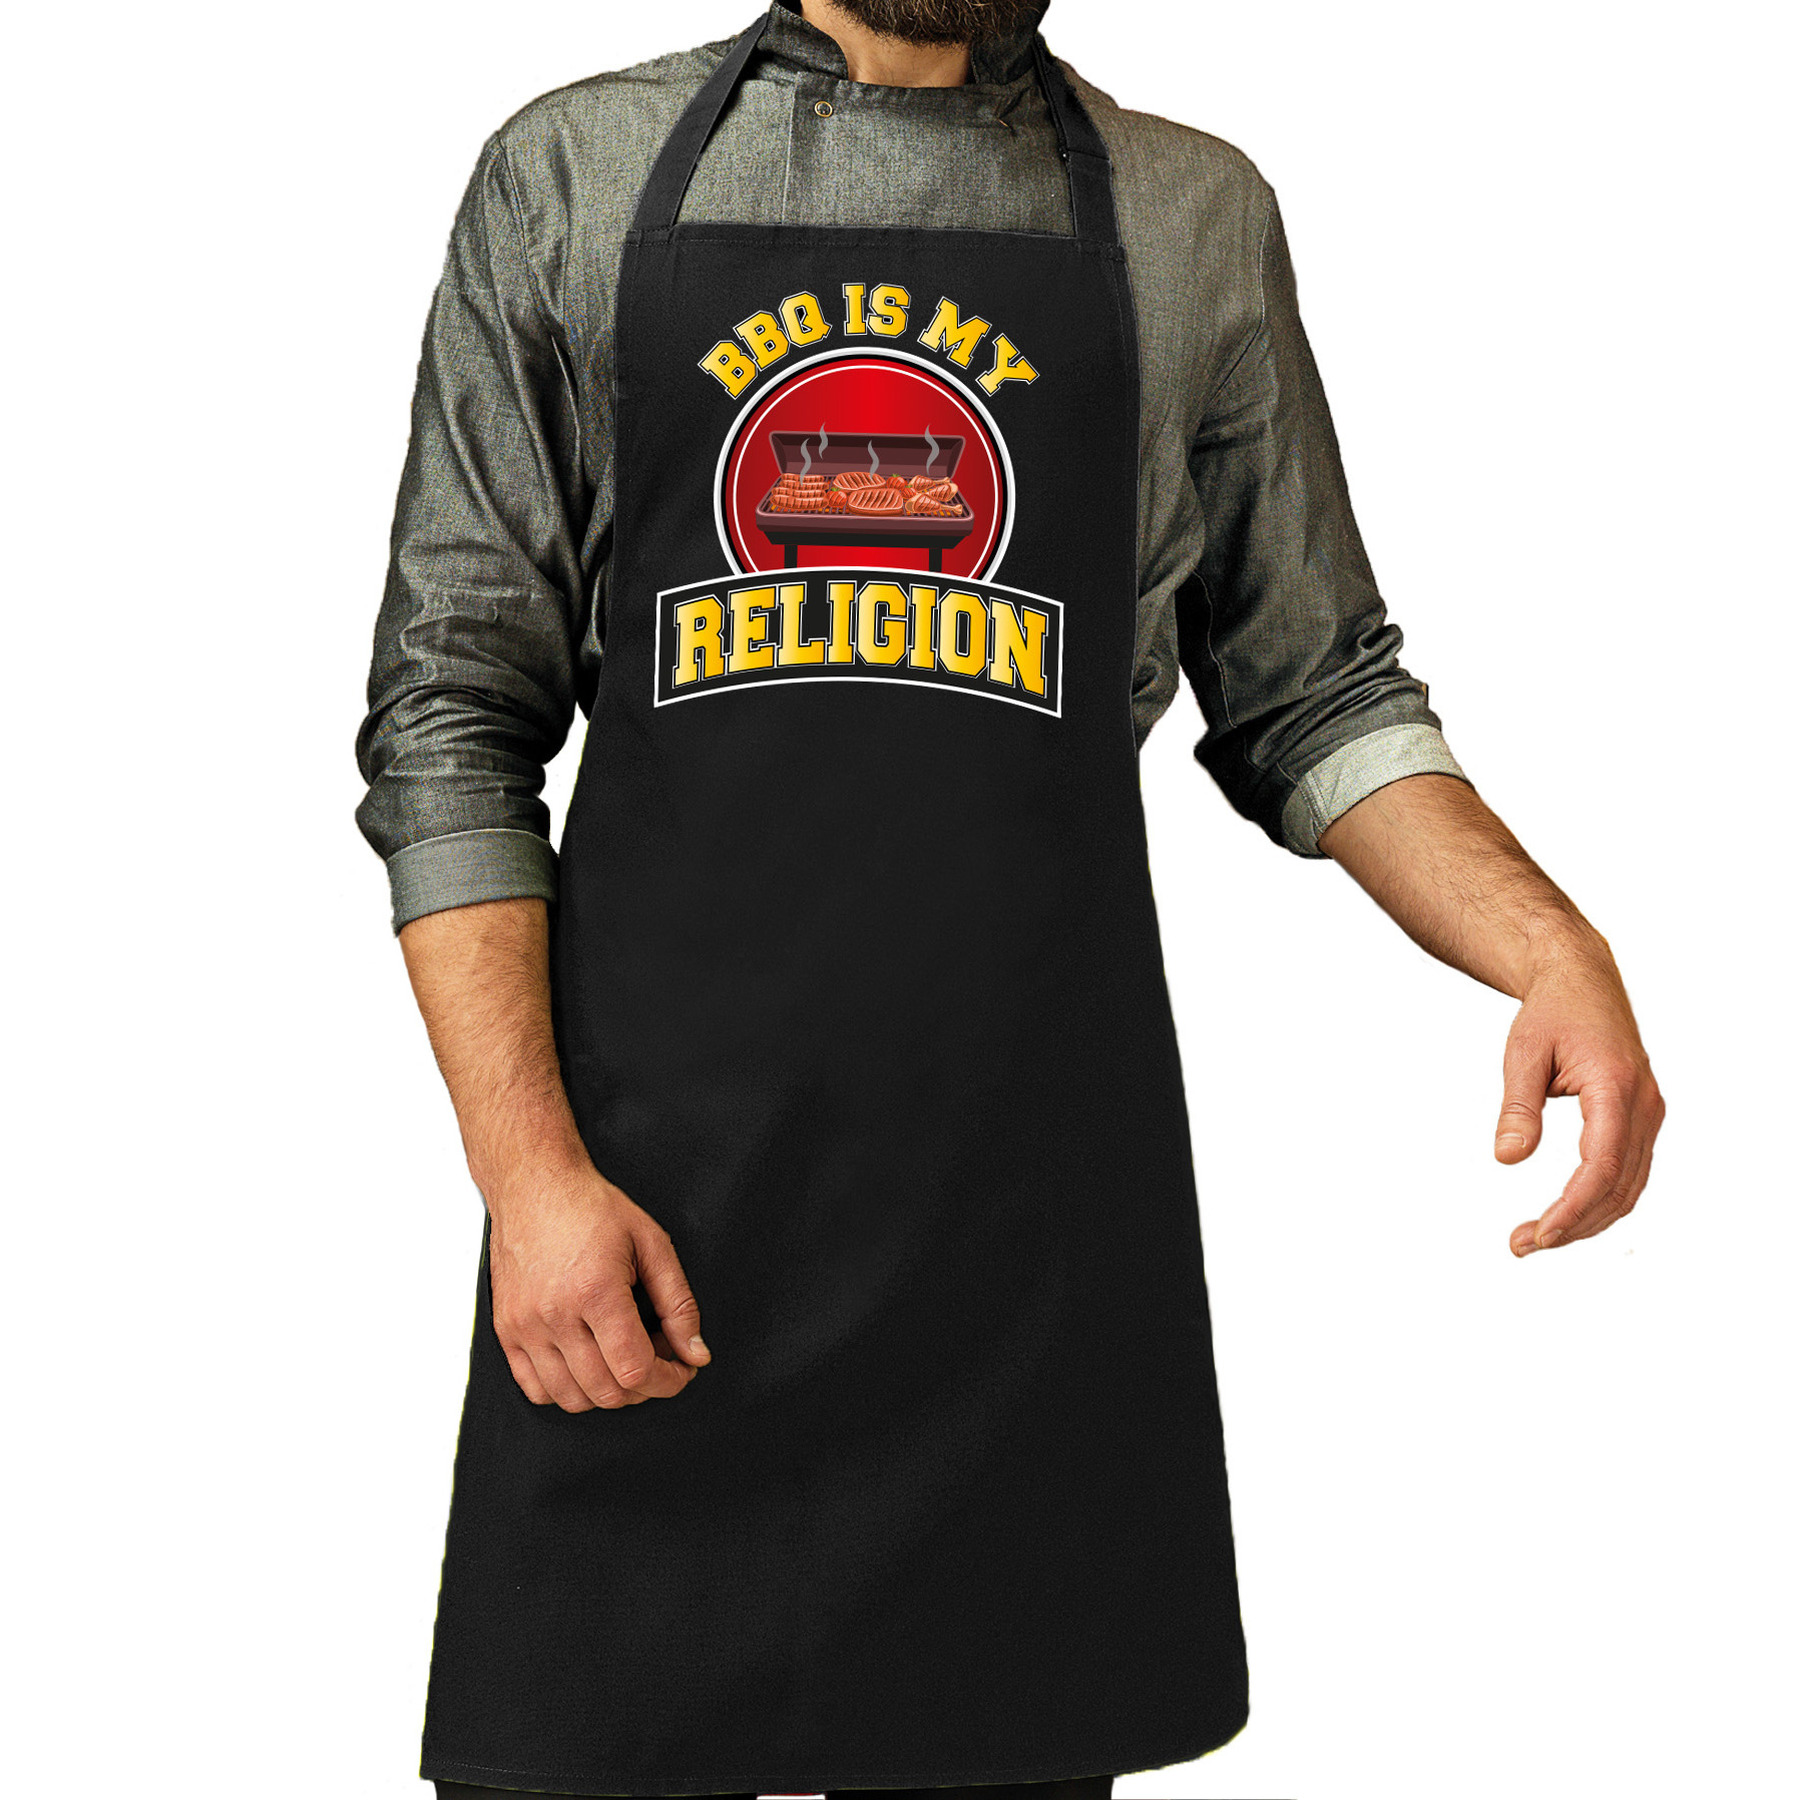 Keukenschort-barbecue schort voor heren BBQ is my religion zwart cadeau Vaderdag barbeque